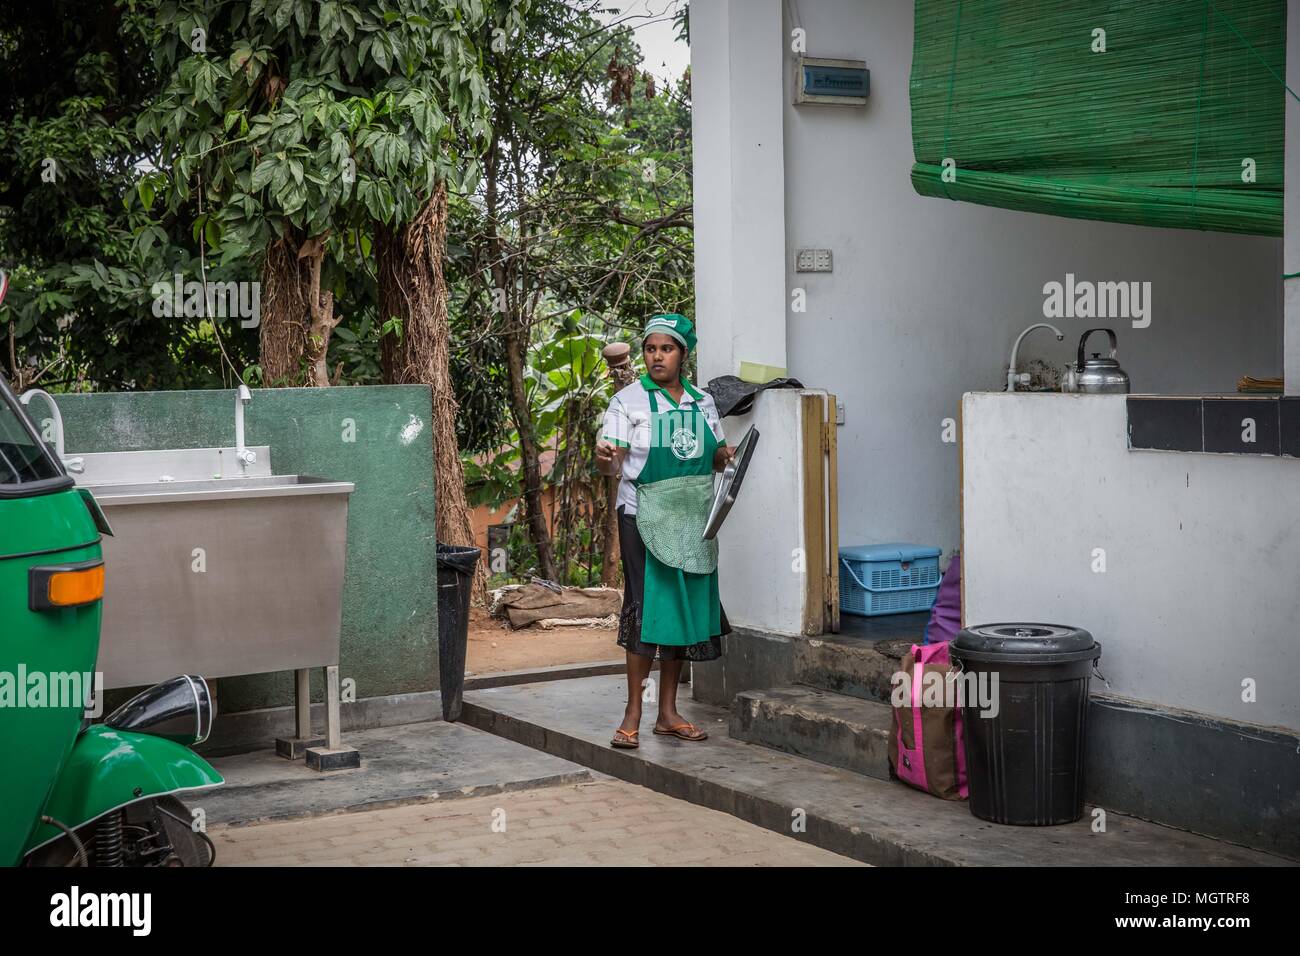 Kandy, Sri Lanka. 15 Feb, 2018. Un trabajador toma un descanso durante su turno en la Hela Bojun Hala Kundasale café en el suburbio de la ciudad de Kandy, Sri Lanka, el jueves, 15 de febrero de 2018.Hela Bojun tribunales alimentos, esparcidos por toda la isla nación, son las cocinas abiertas que sirven comida tradicional de Sri Lanka a precios subvencionados. Están financiados por el gobierno de Sri Lanka, y fueron creados para promover la producción local y a la potenciación de la mujer. Crédito: Tracy Barbutes/Zuma alambre/Alamy Live News Foto de stock